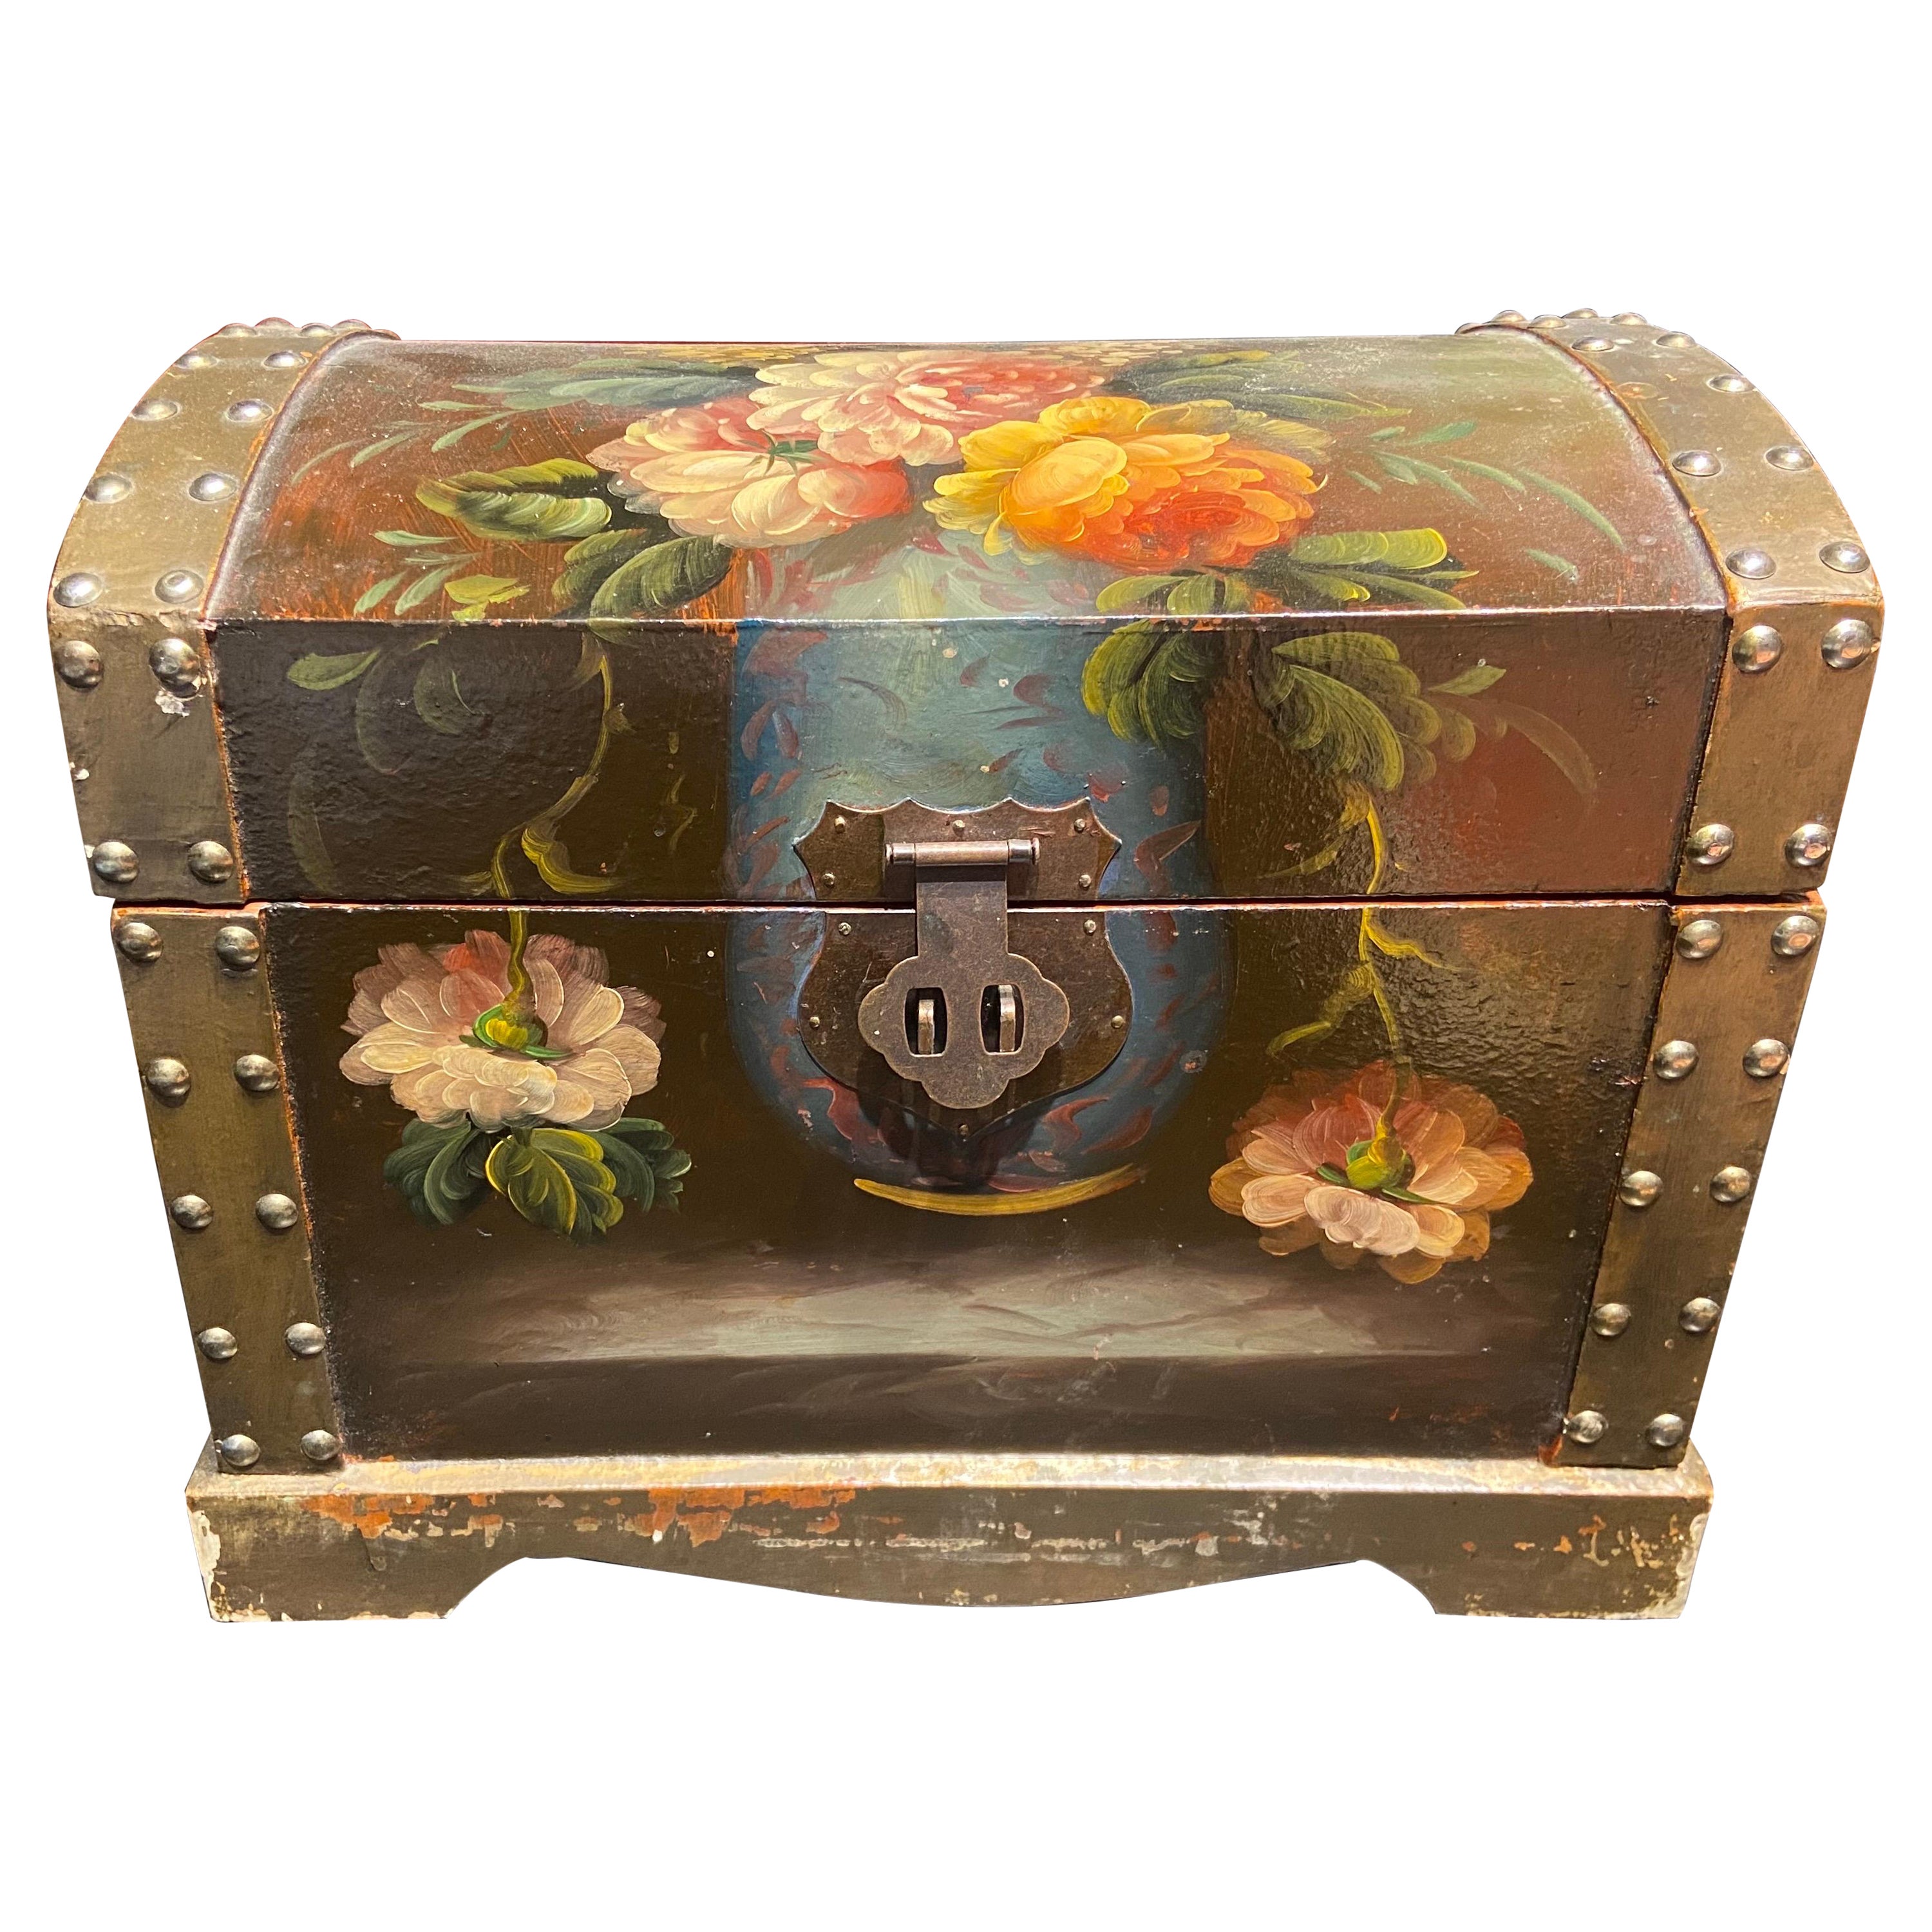 19ème siècle, français, peint à la main dans une boîte en bois à fleurs avec décoration en métal